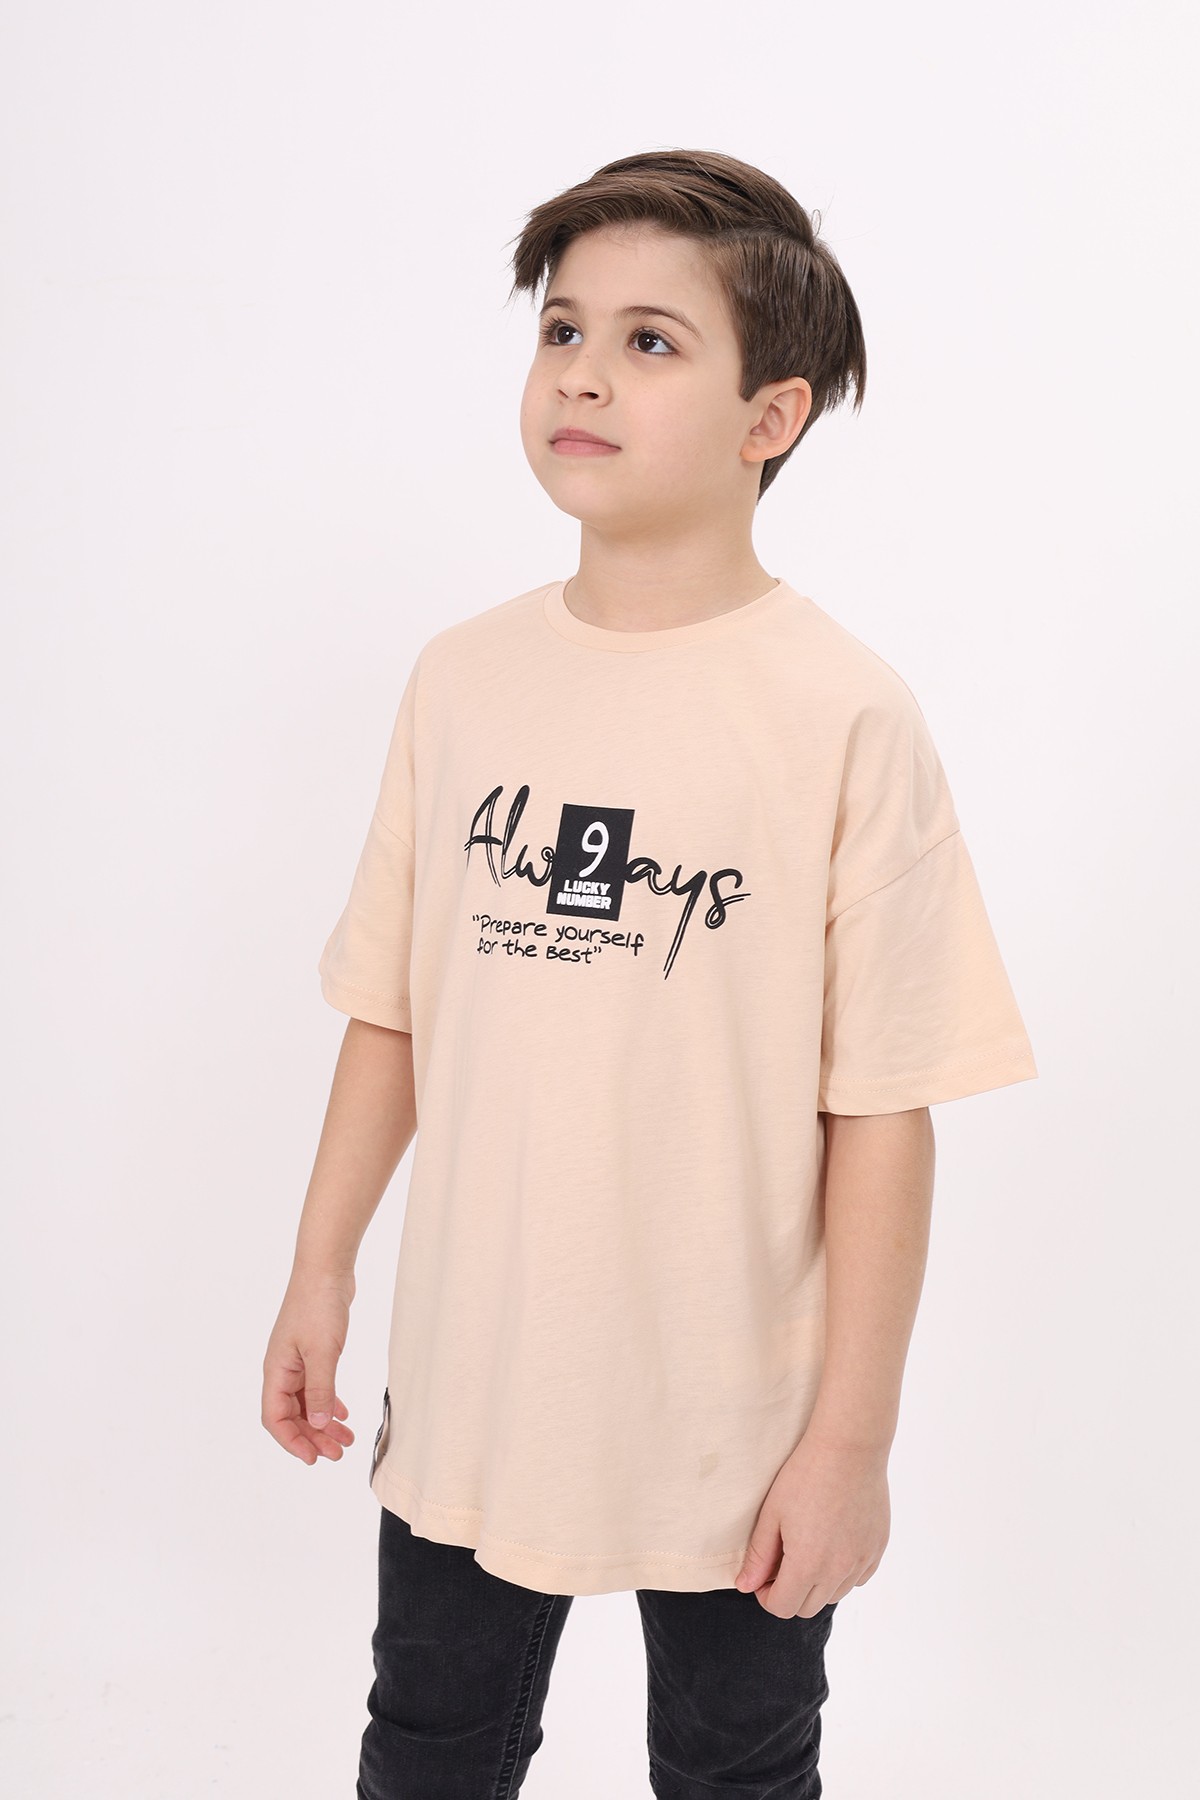 Toontoy Erkek Çocuk Baskılı Tişört